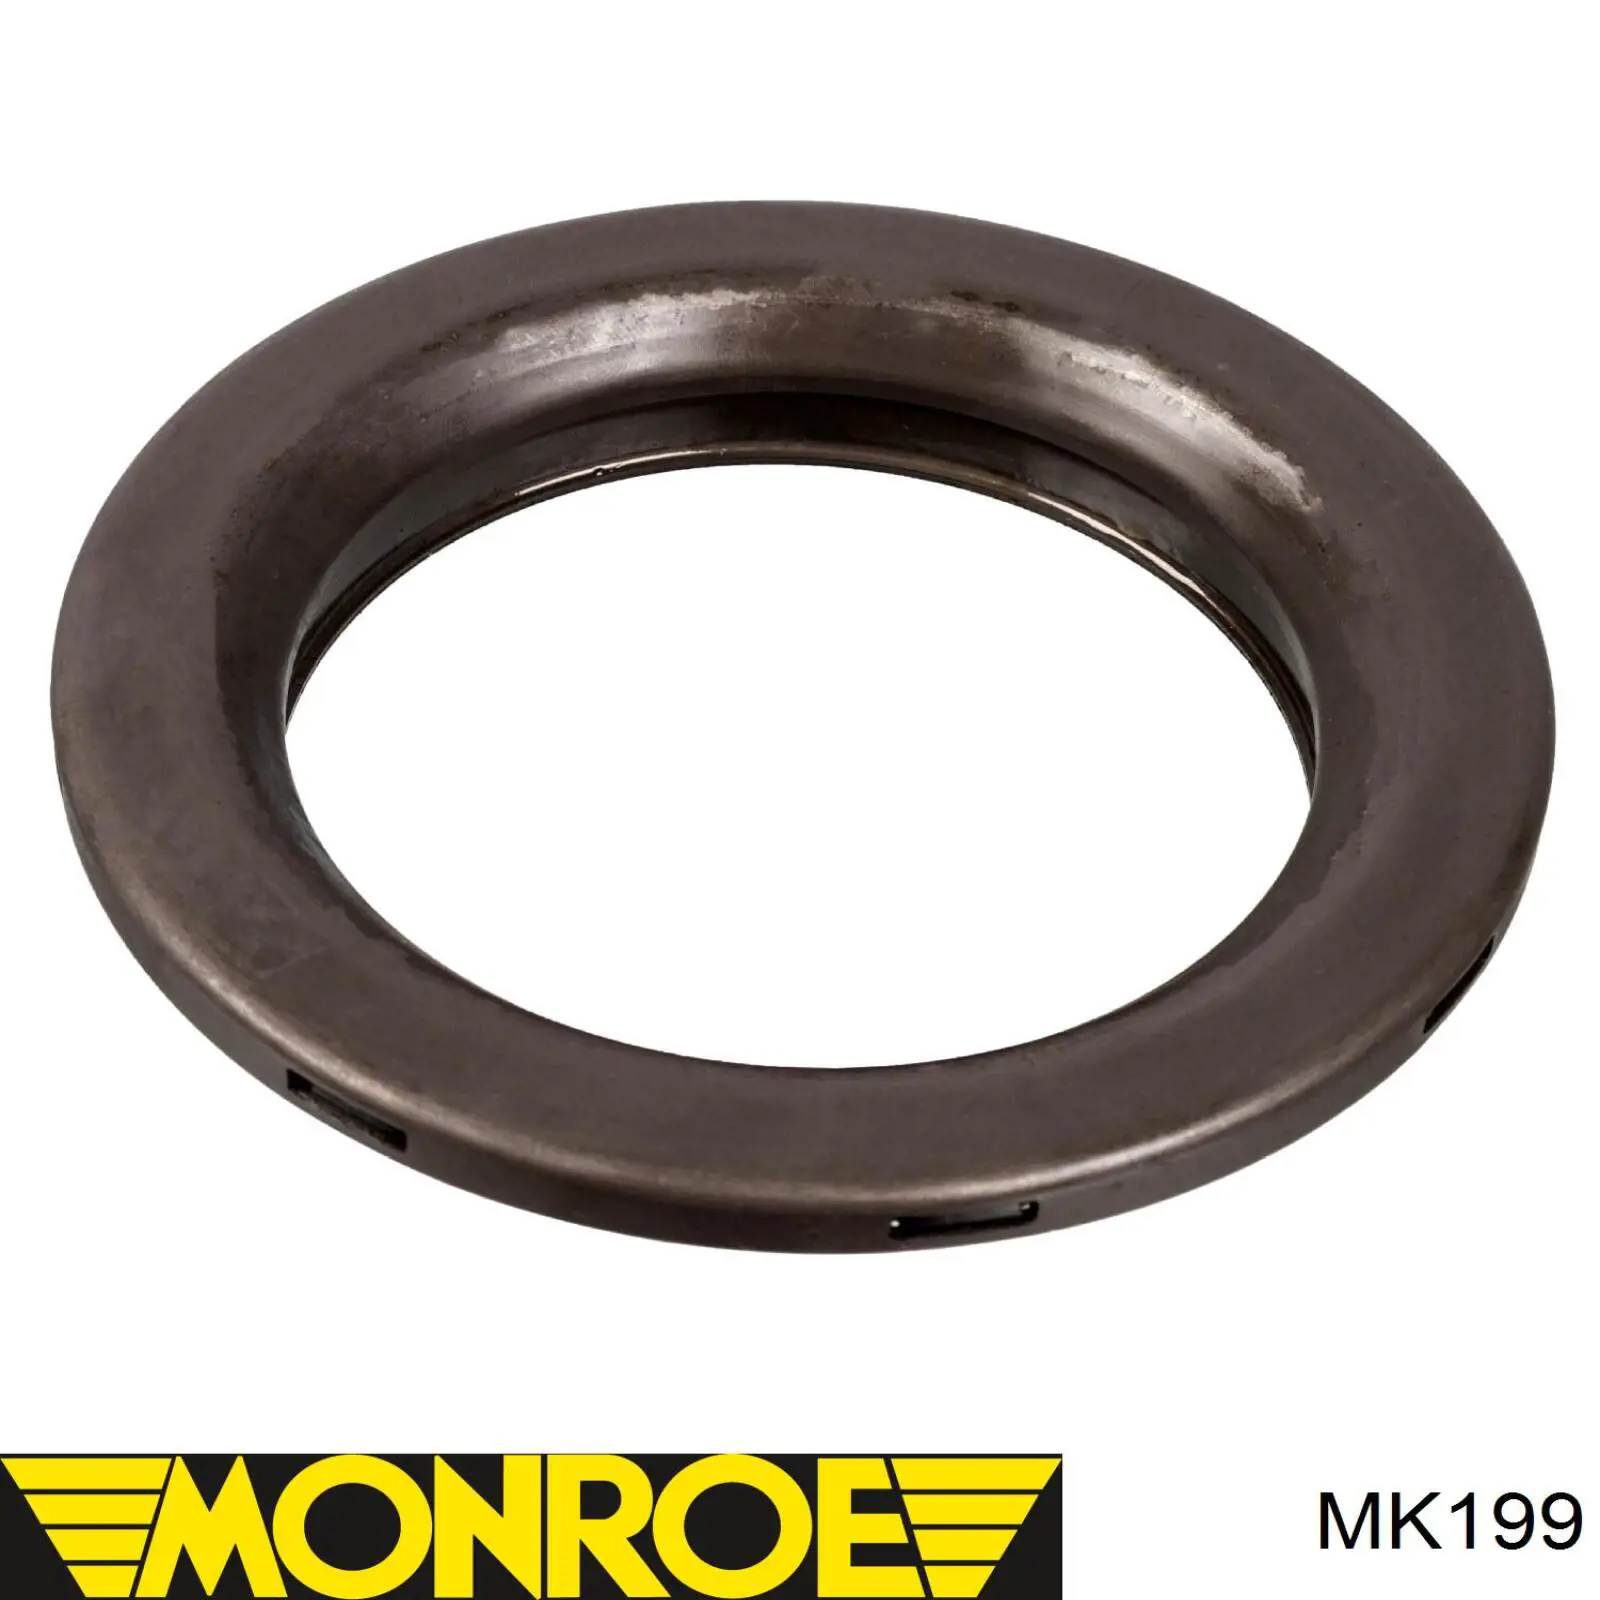 MK199 Monroe soporte amortiguador delantero